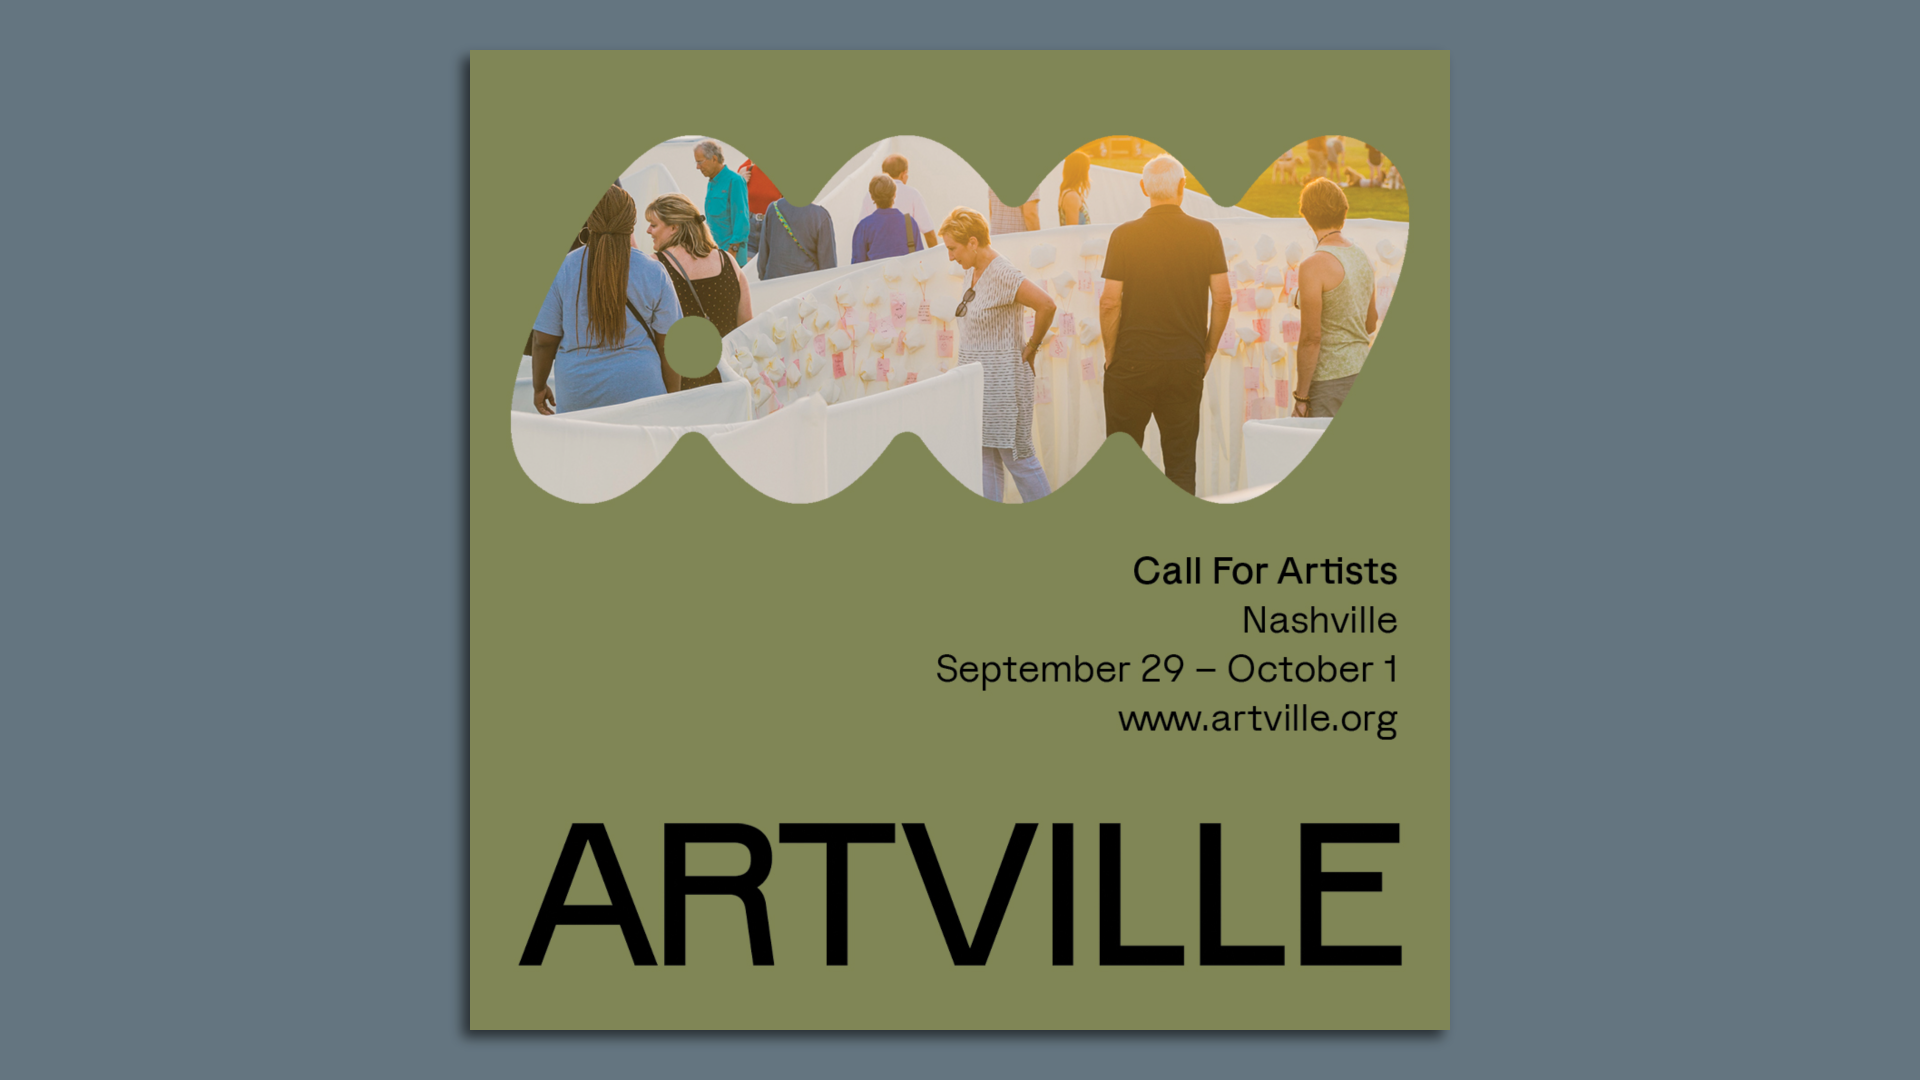 A poster for a Nashville art fair Artville running Sept. 29-Oct. 1.